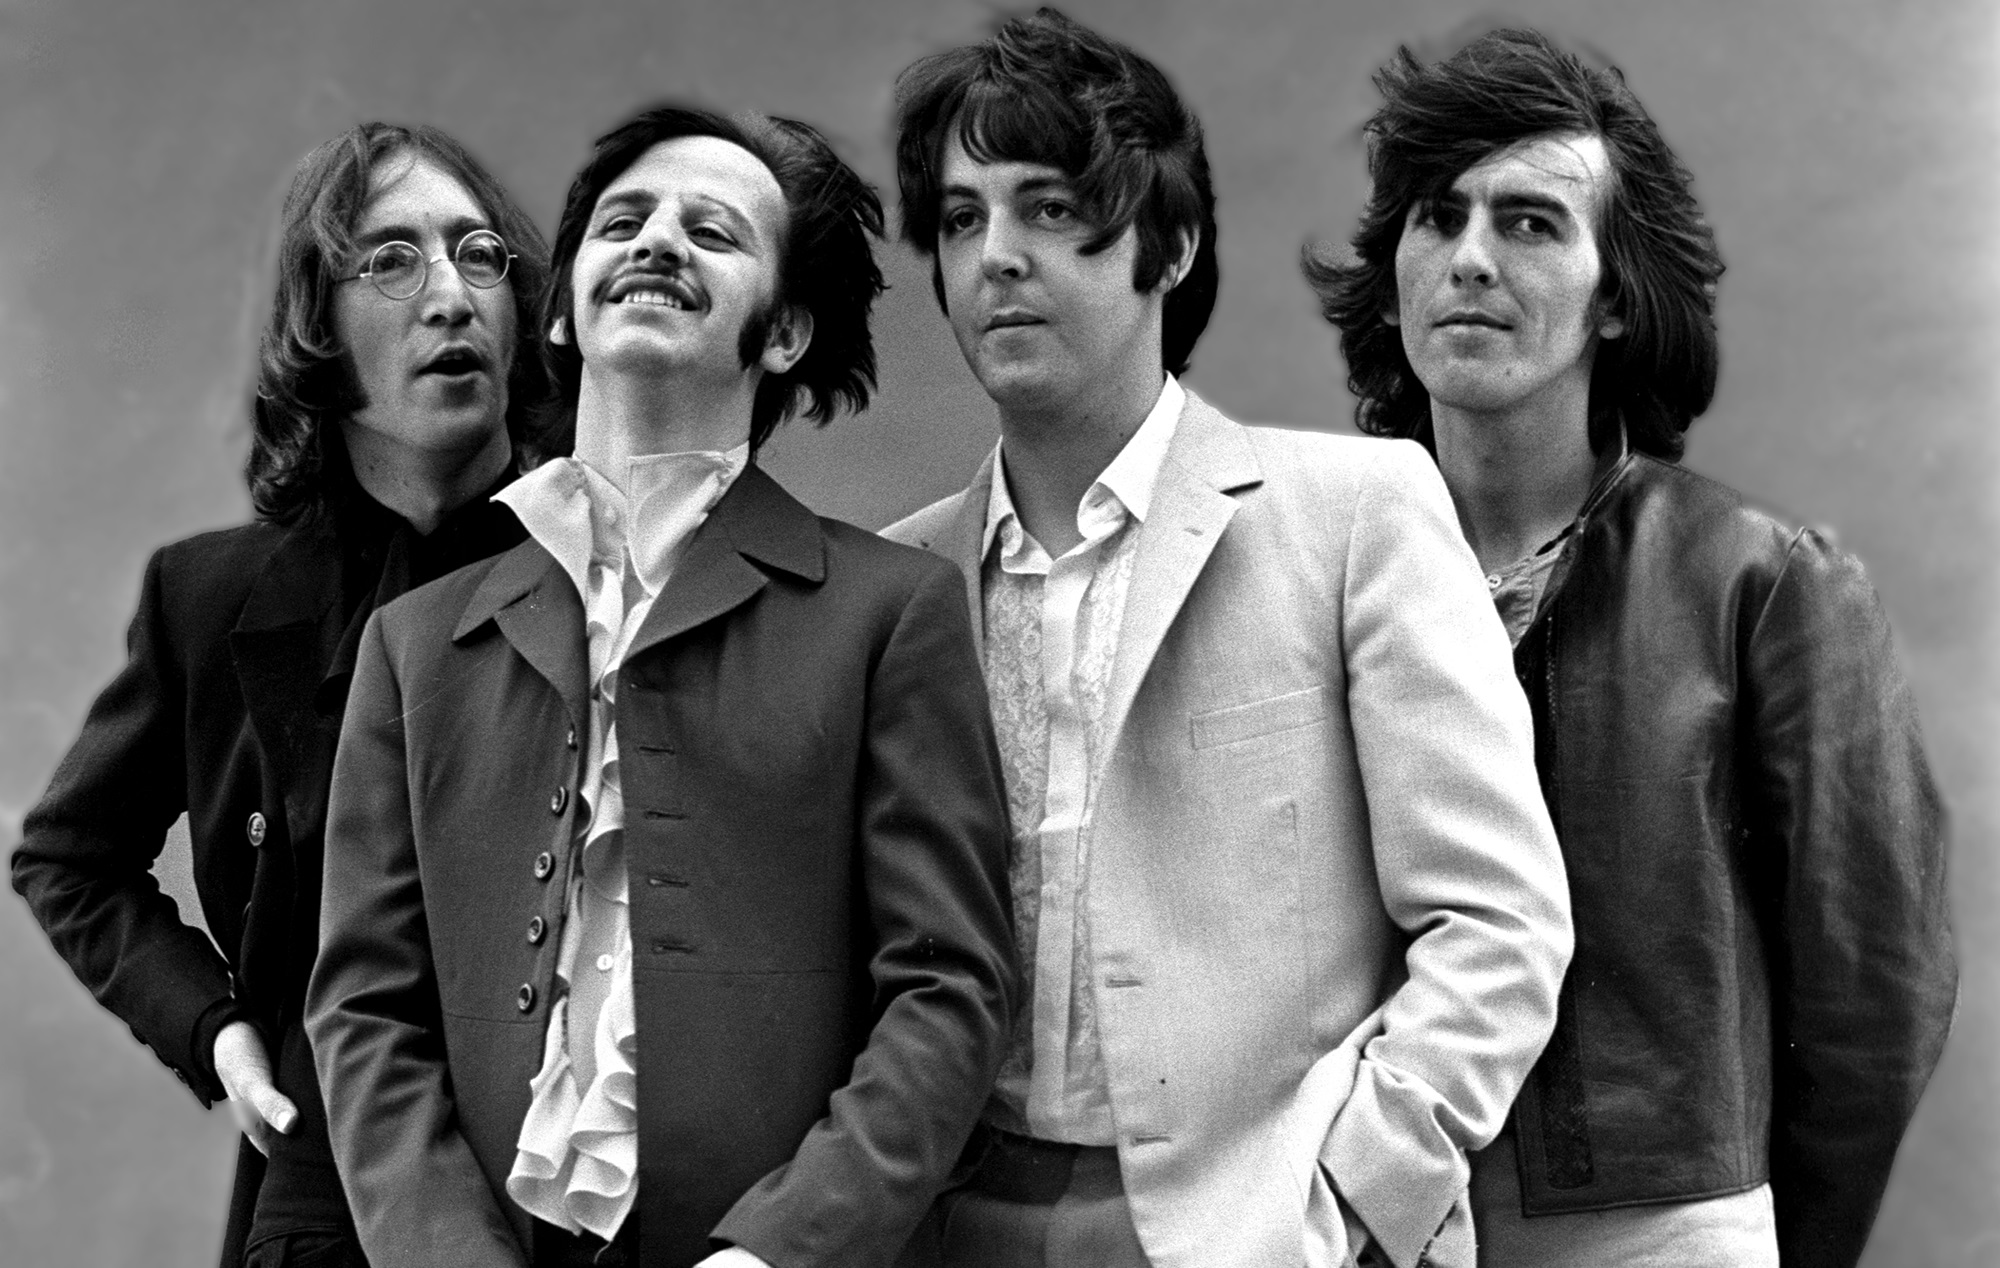 Τέσσερις ταινίες, μία για κάθε μέλος των Beatles από τον Sam Mendes